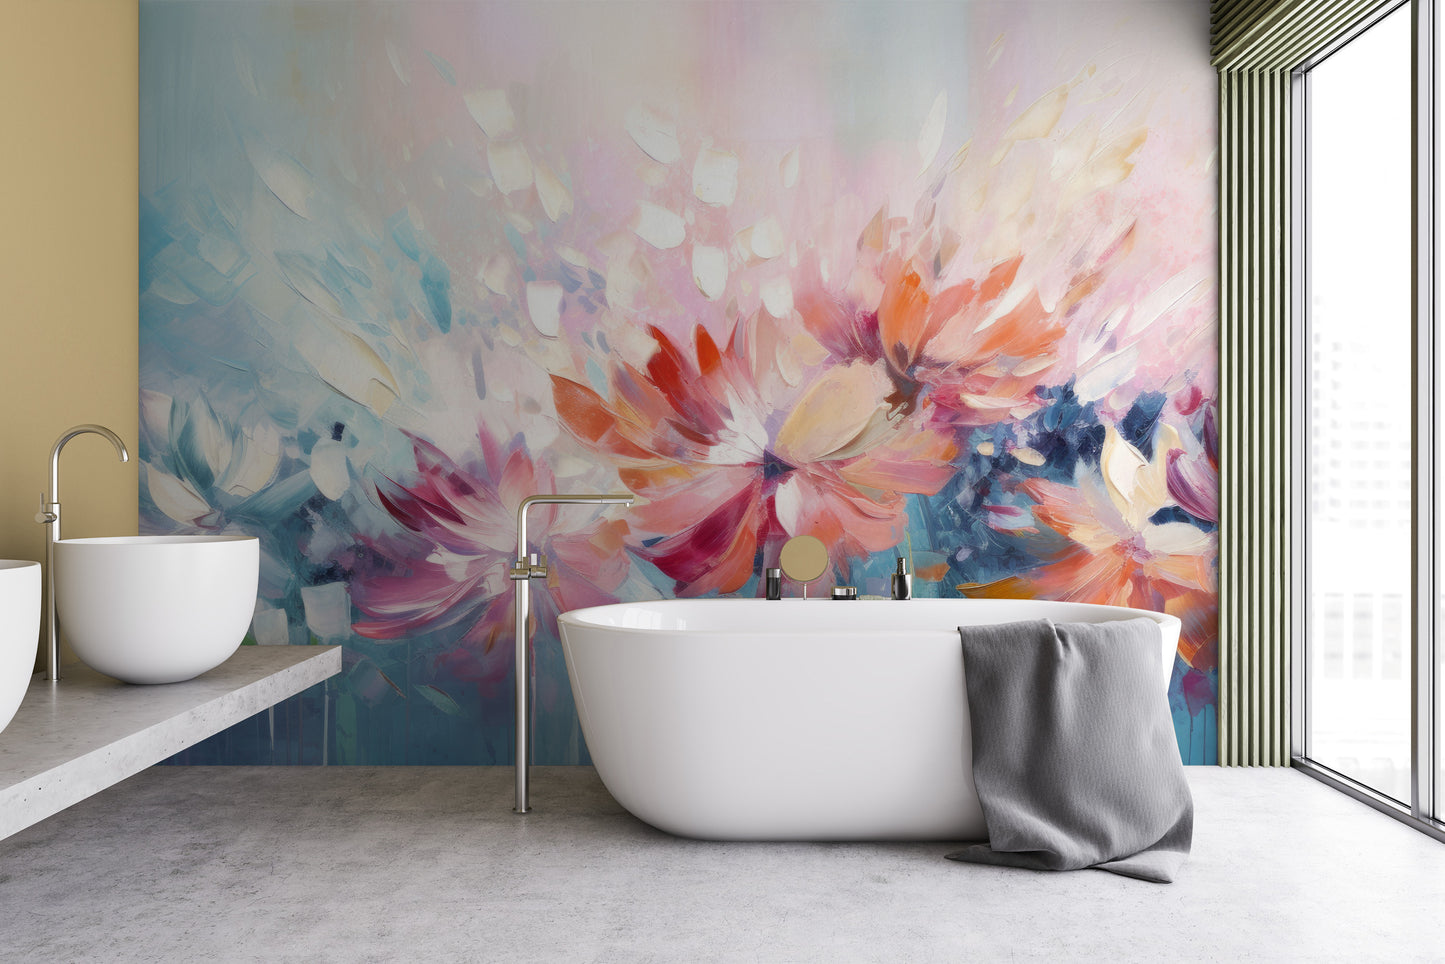 Fototapeta malowana o nazwie Floral Watercolor Fantasy pokazana w aranżacji wnętrza.